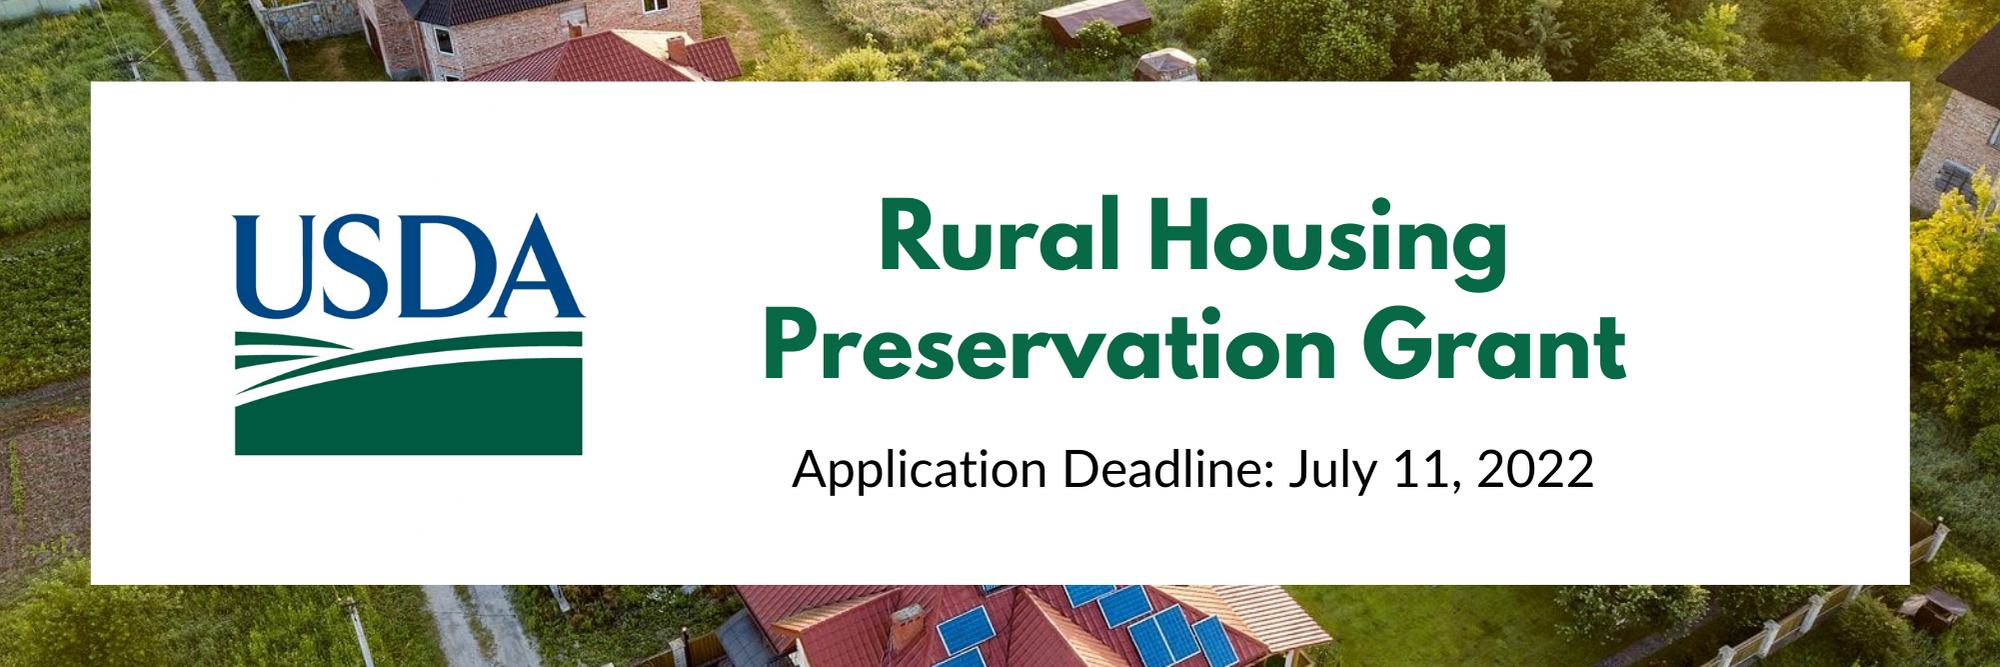 Rural Housing Preservation Grant Baner